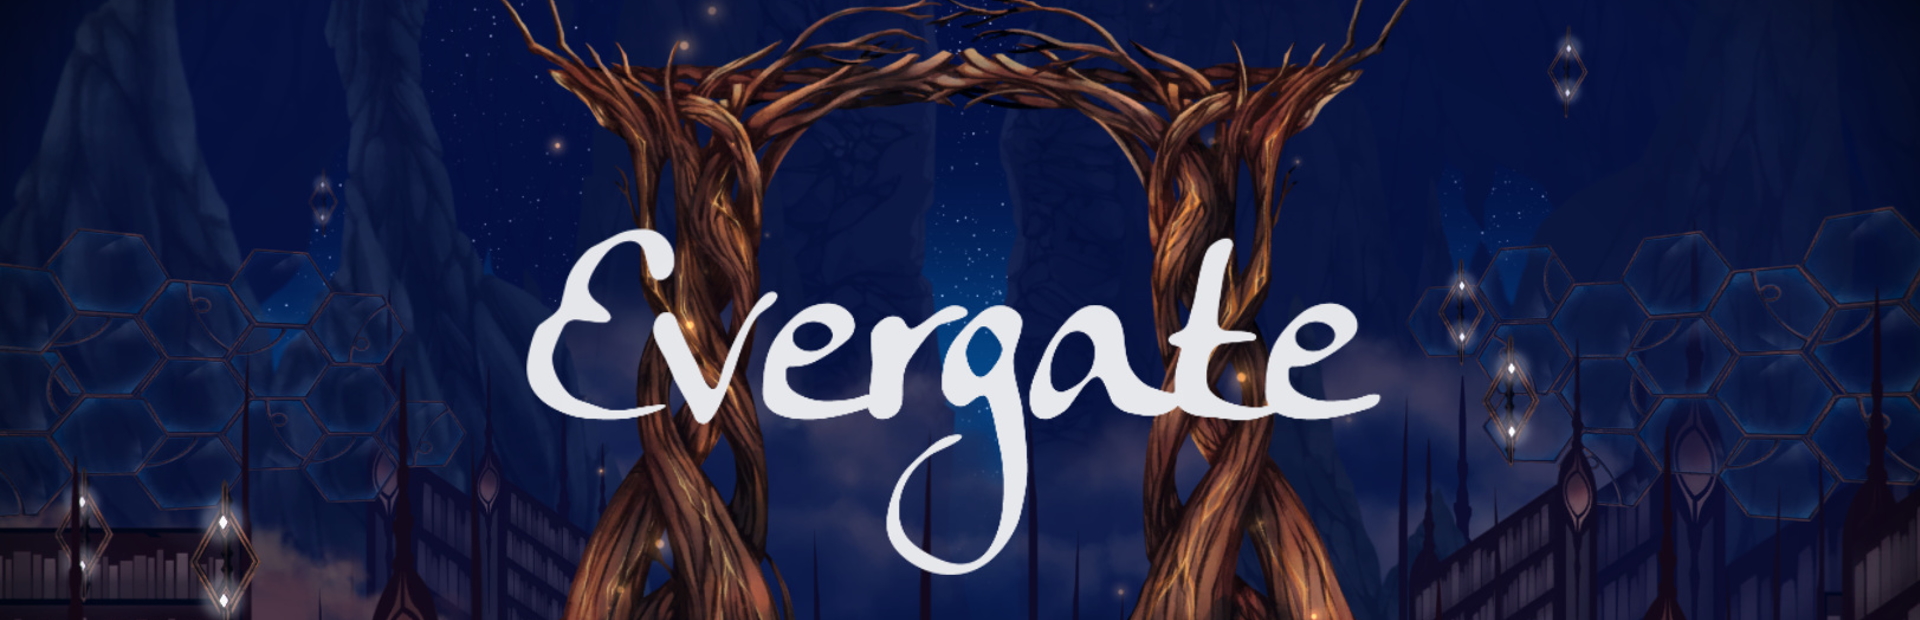 دانلود بازی Evergate برای پی سی | گیمباتو